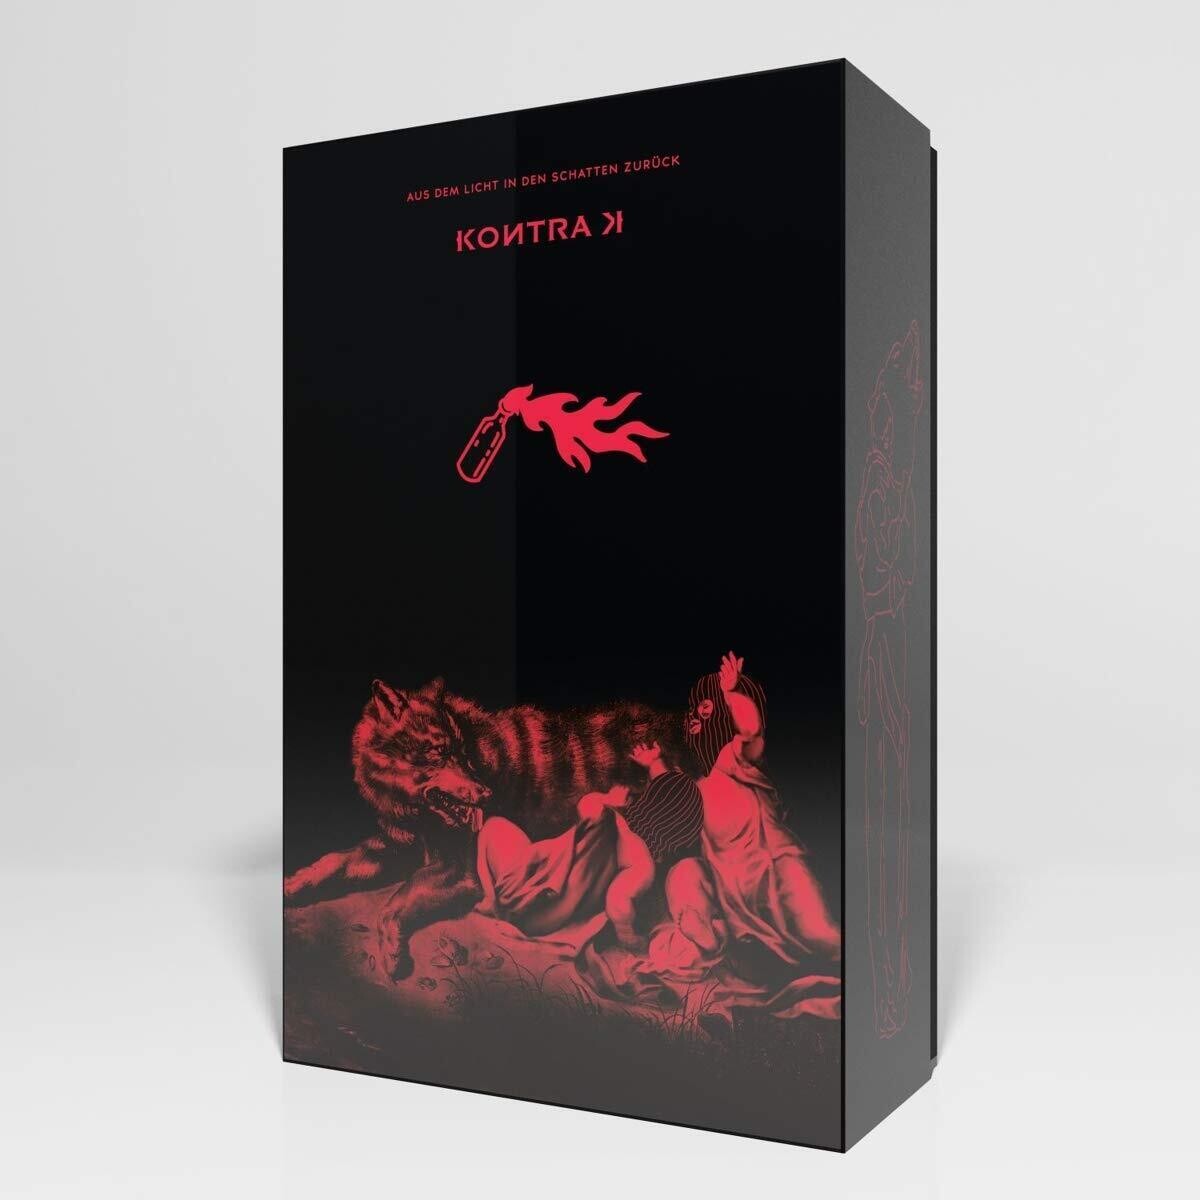 Kontra K - Aus dem Licht in den Schatten zurück (Limited Deluxe Box Gr. S, M, L oder XL)(2021) CD